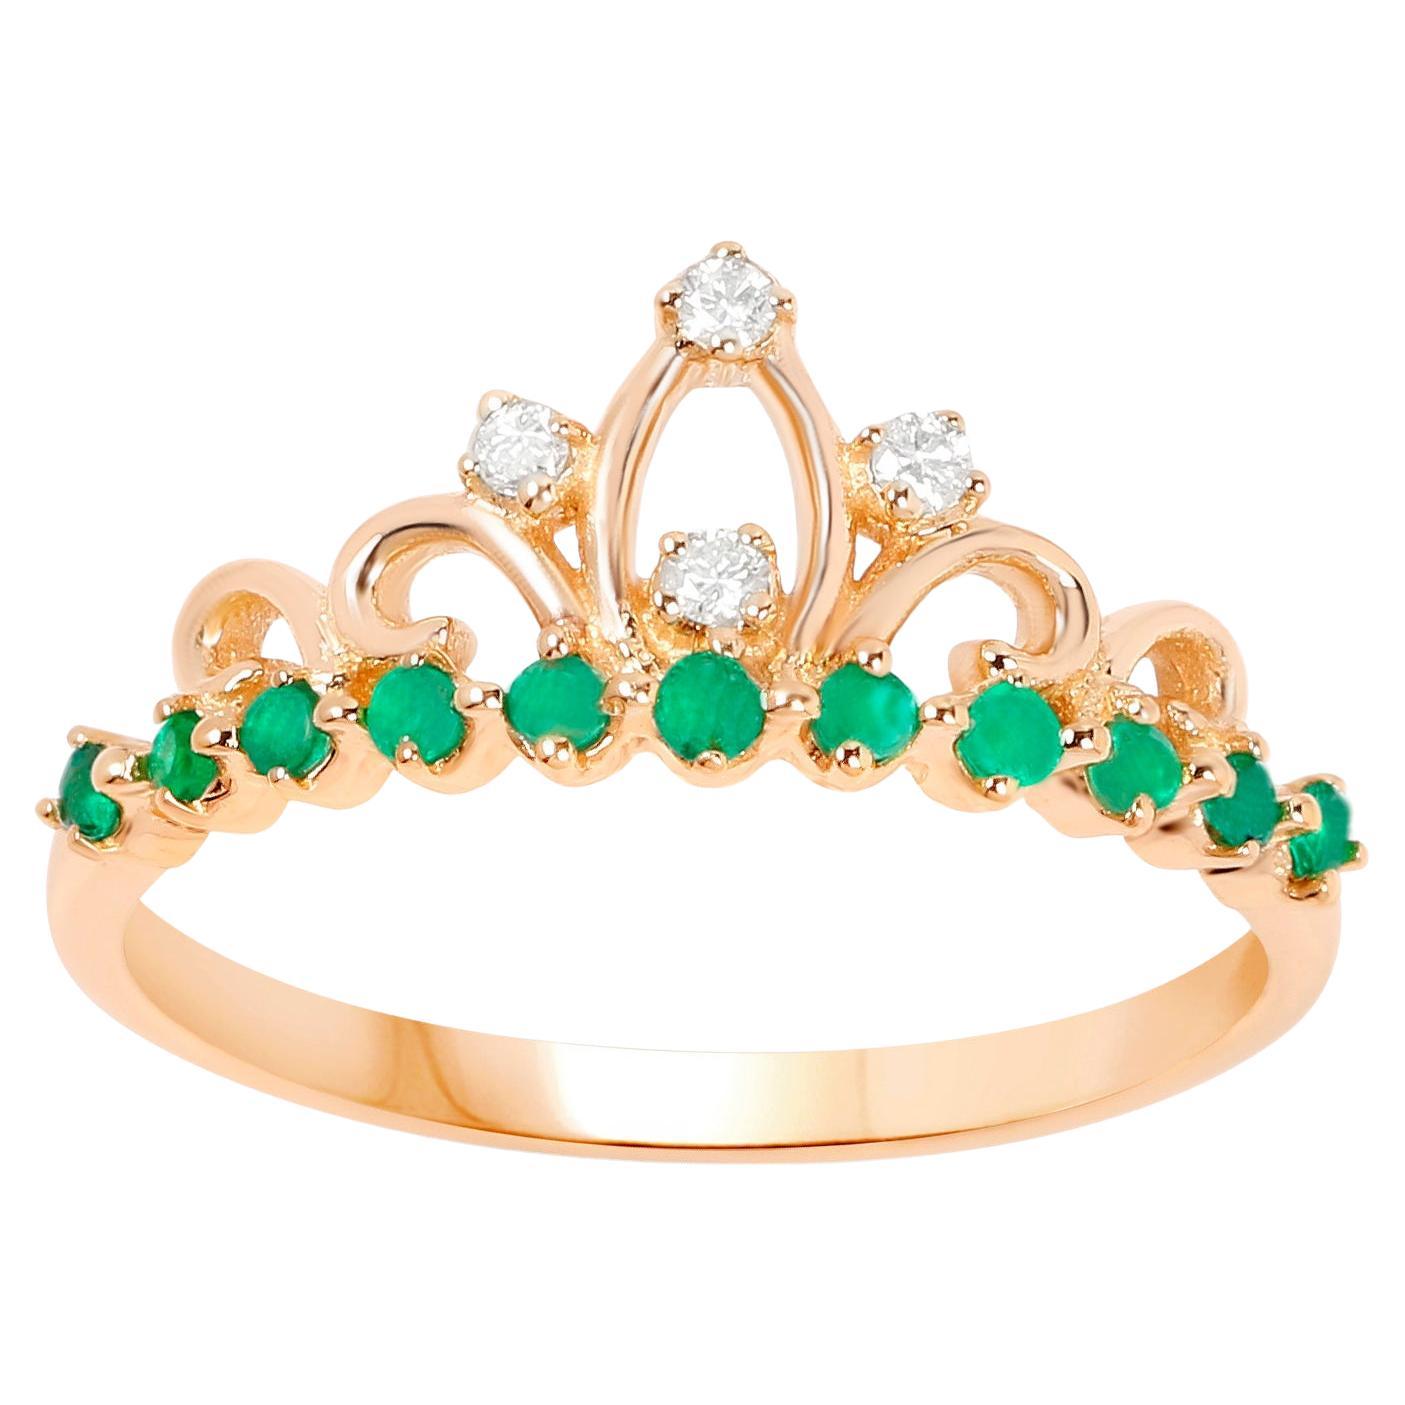 Tiara Ring Zambian Emeralds and Diamonds 0.29 Carats 14K Yellow Gold